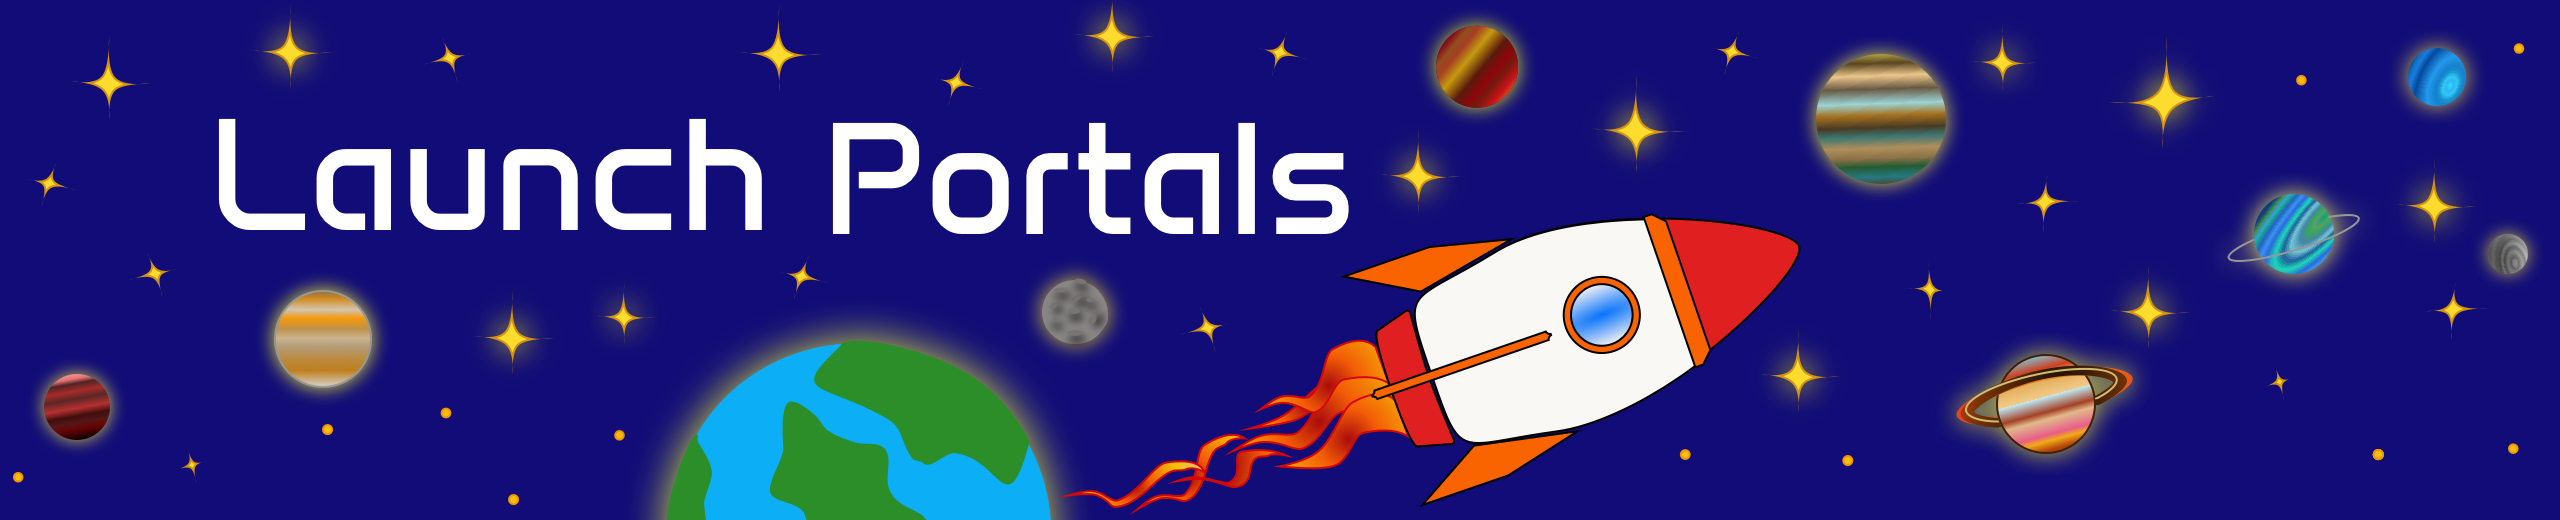 Launch Portals